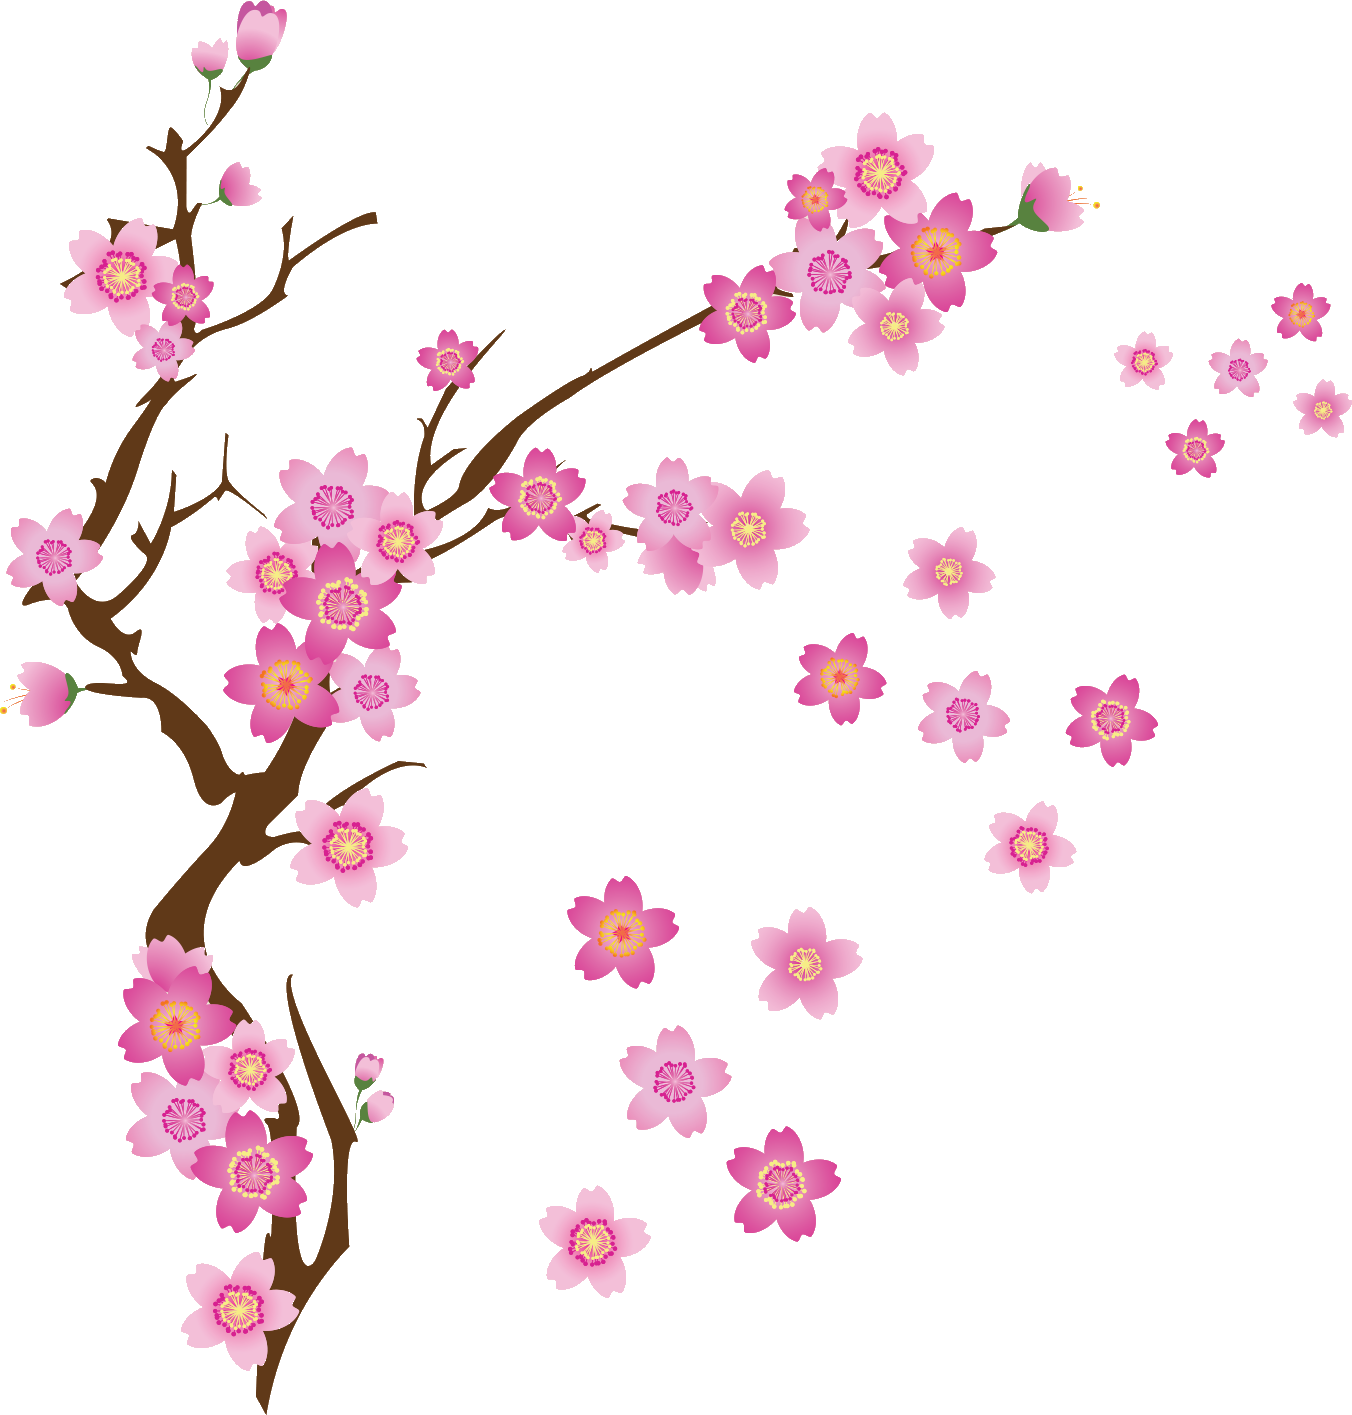 さくら 桜 のイラスト 画像no 058 さくらの花と枝 無料のフリー素材集 百花繚乱